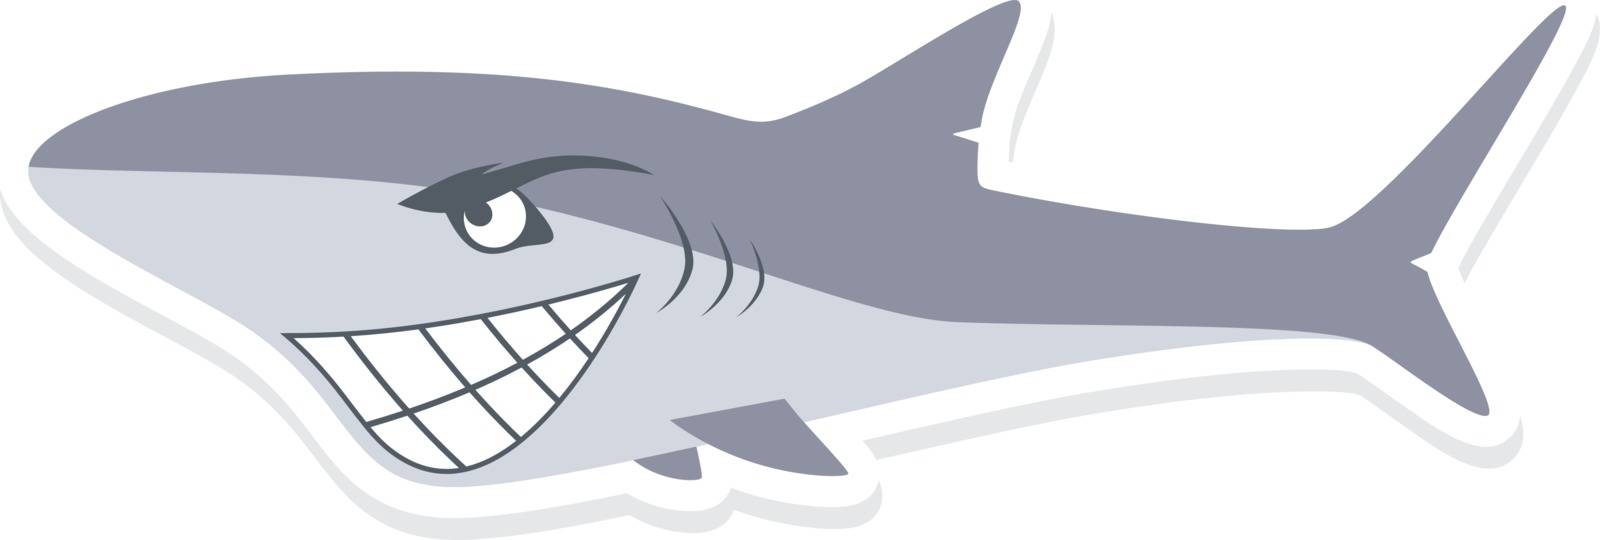 shark by vector1st